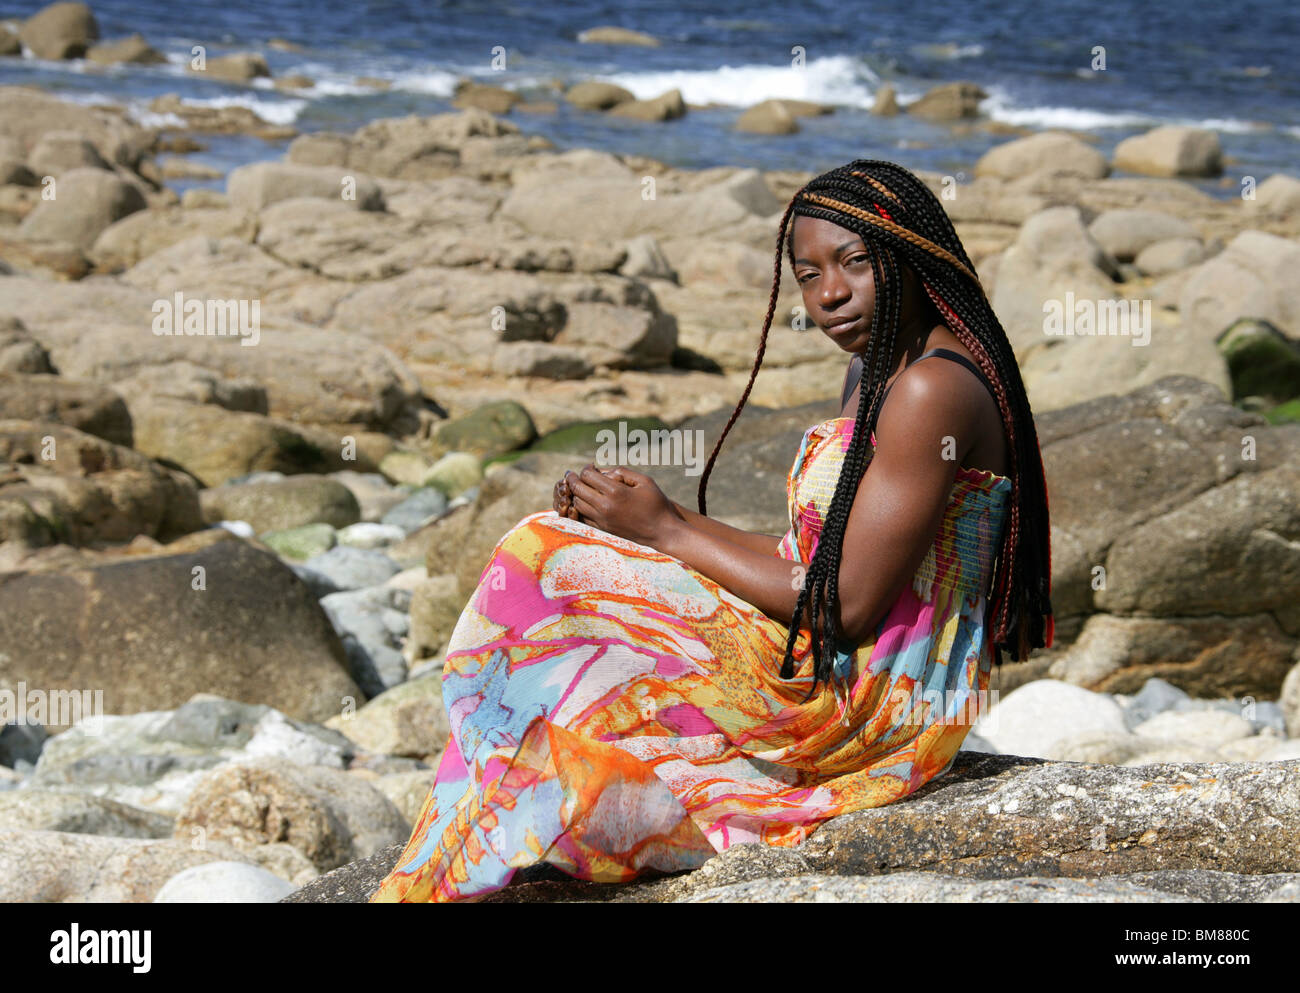 Afrikanische Frau mit Dreadlocks und trägt ein bunteste Kleid, Verlegung auf Felsen am Meer. Stockfoto